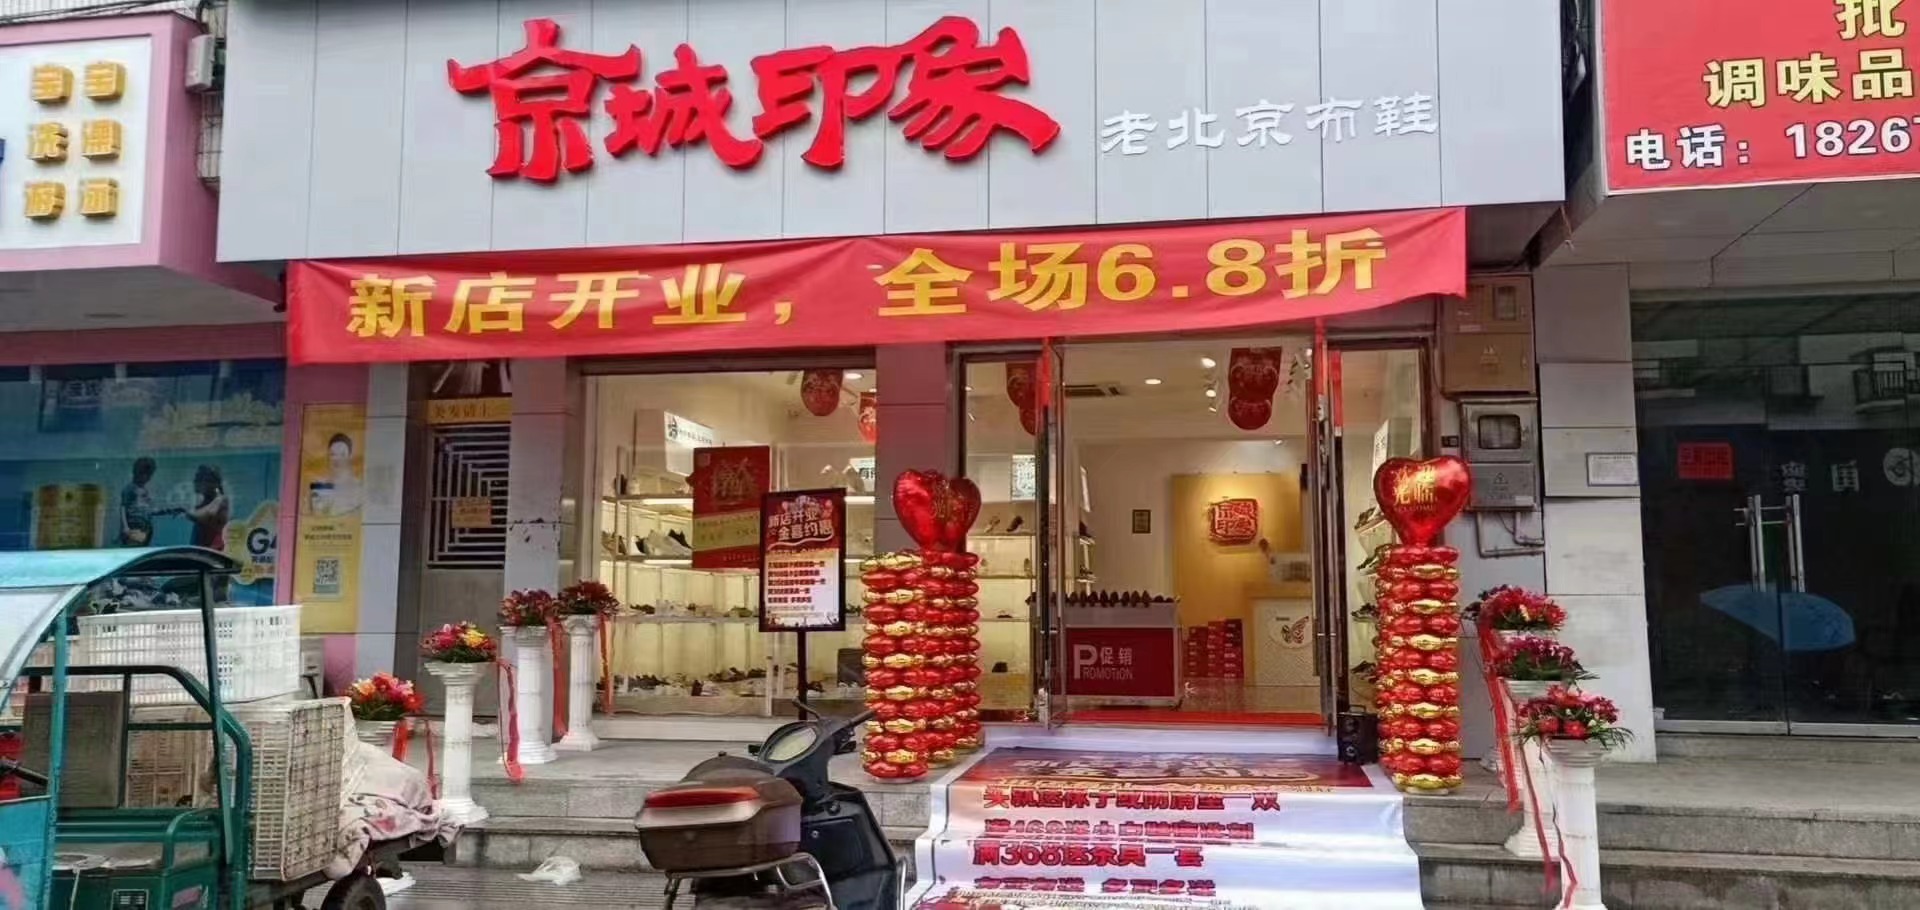 贺：京城印象老北京布鞋加盟店山东张老板盛大开业！